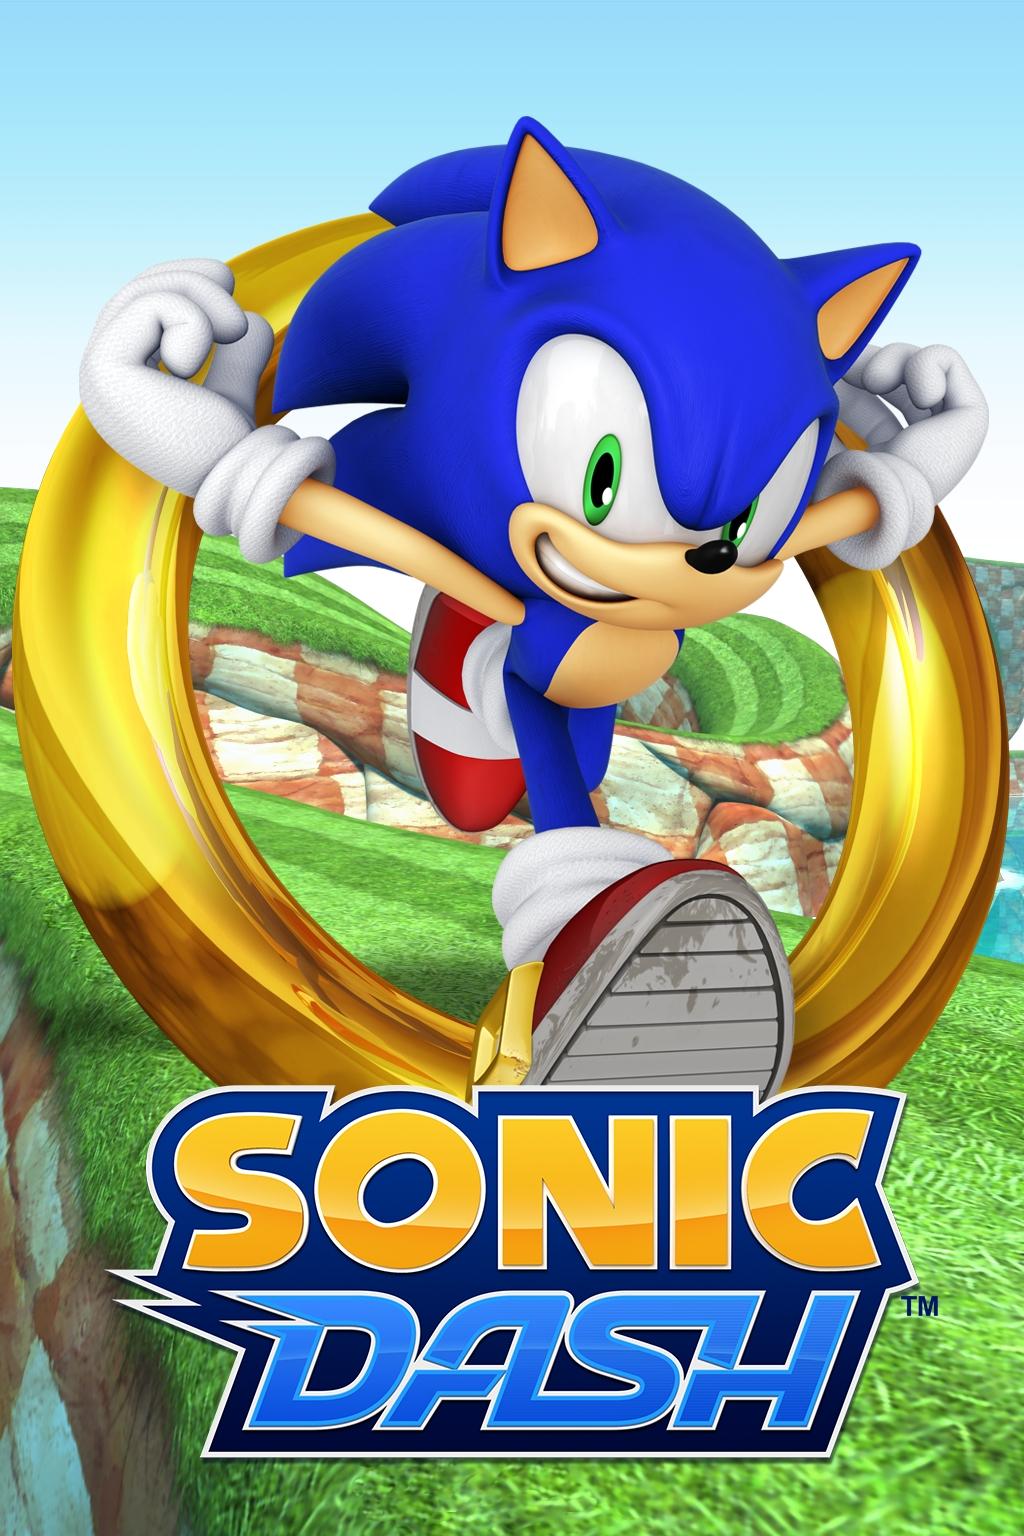 TSS Review: Sonic Dash (iOS)